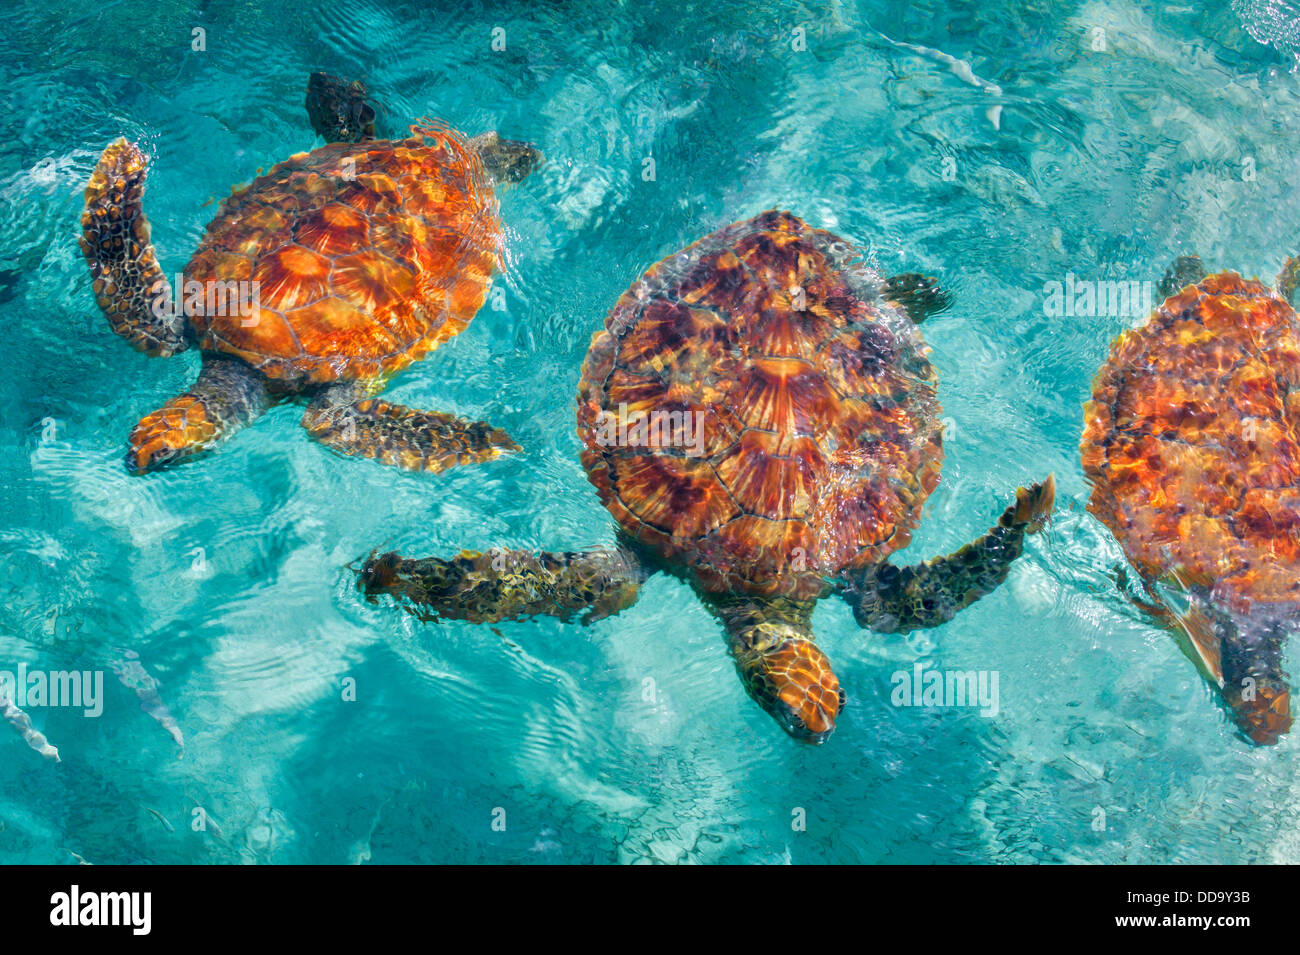 Green Sea Turtles. Bora Bora. French Polynesia. Stock Photo